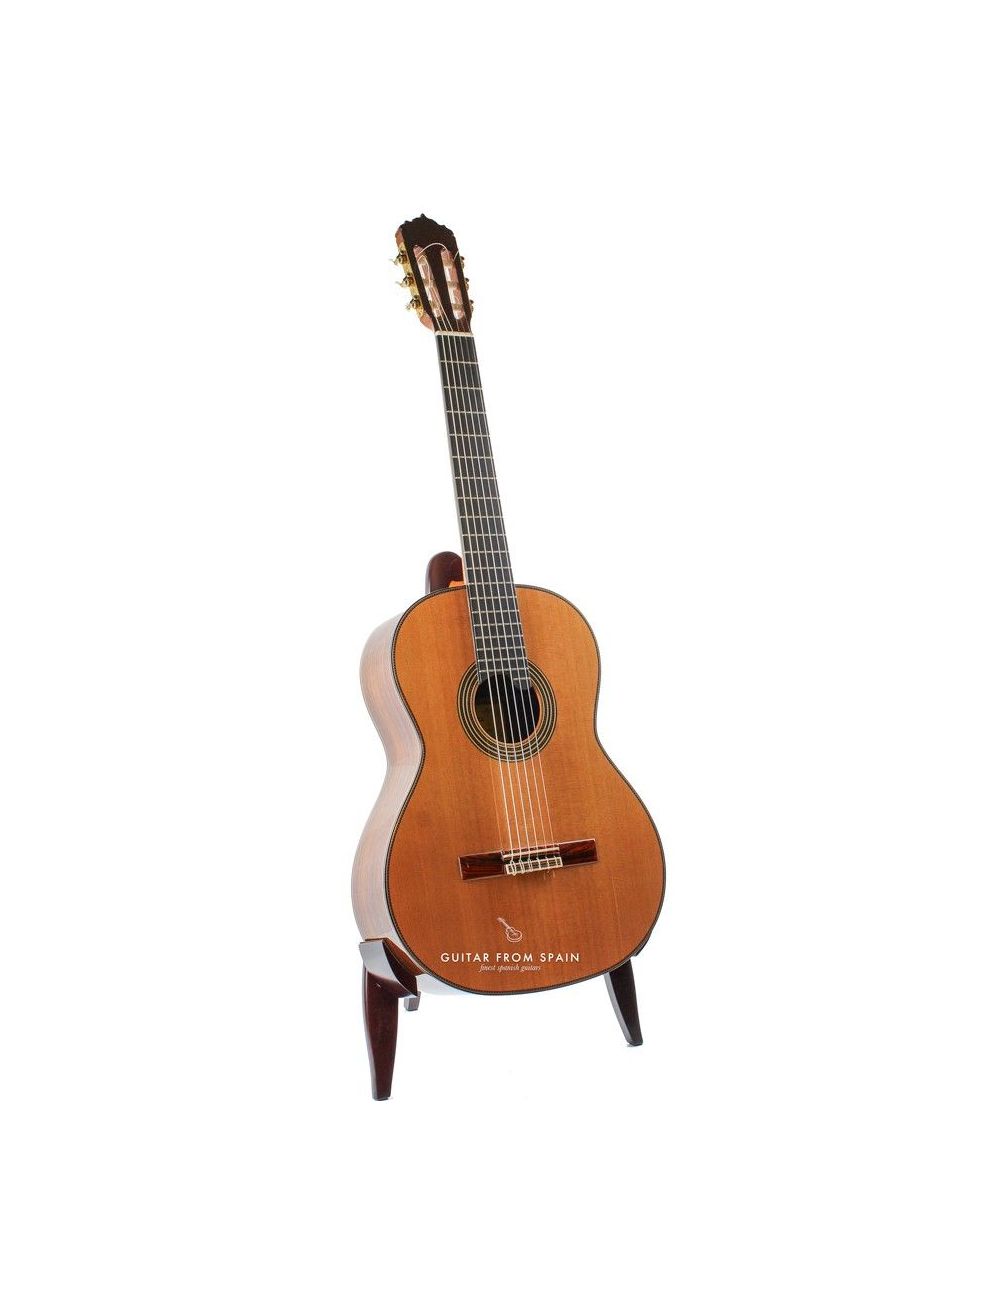 Soporte de guitarra clásica de madera HM EG-23